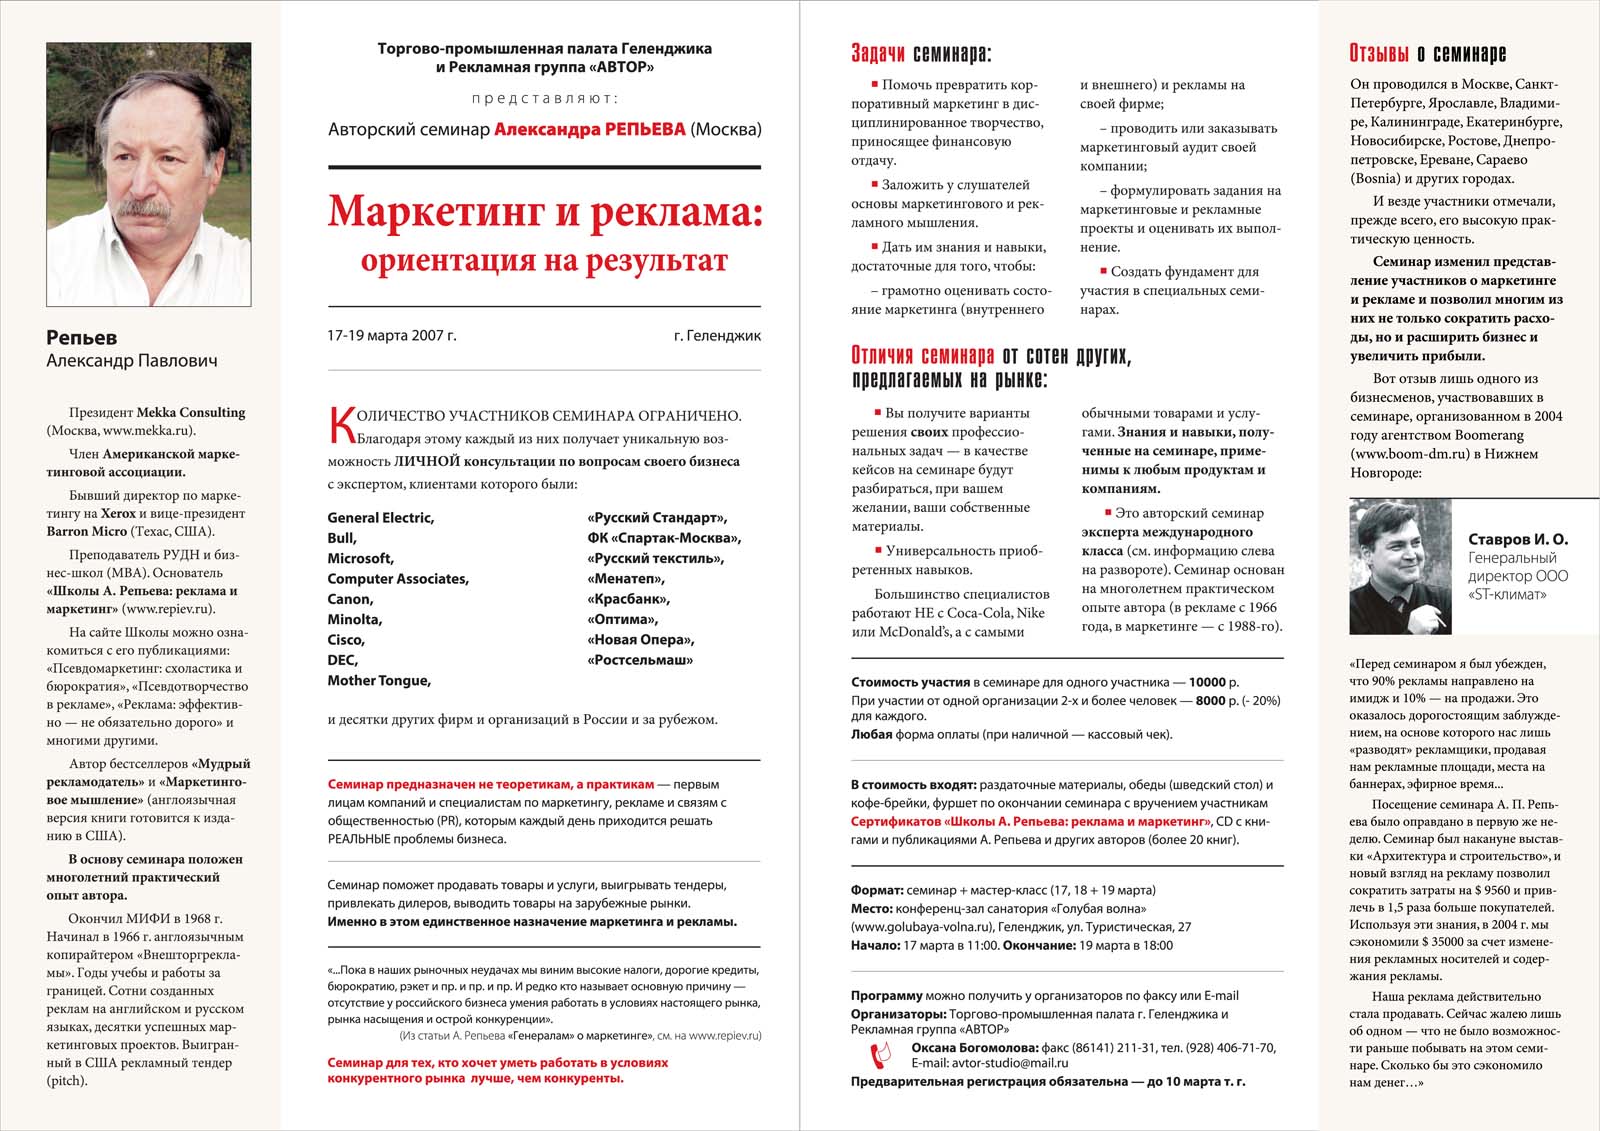 Печатная реклама, Денис Богомолов, семинар Репьева